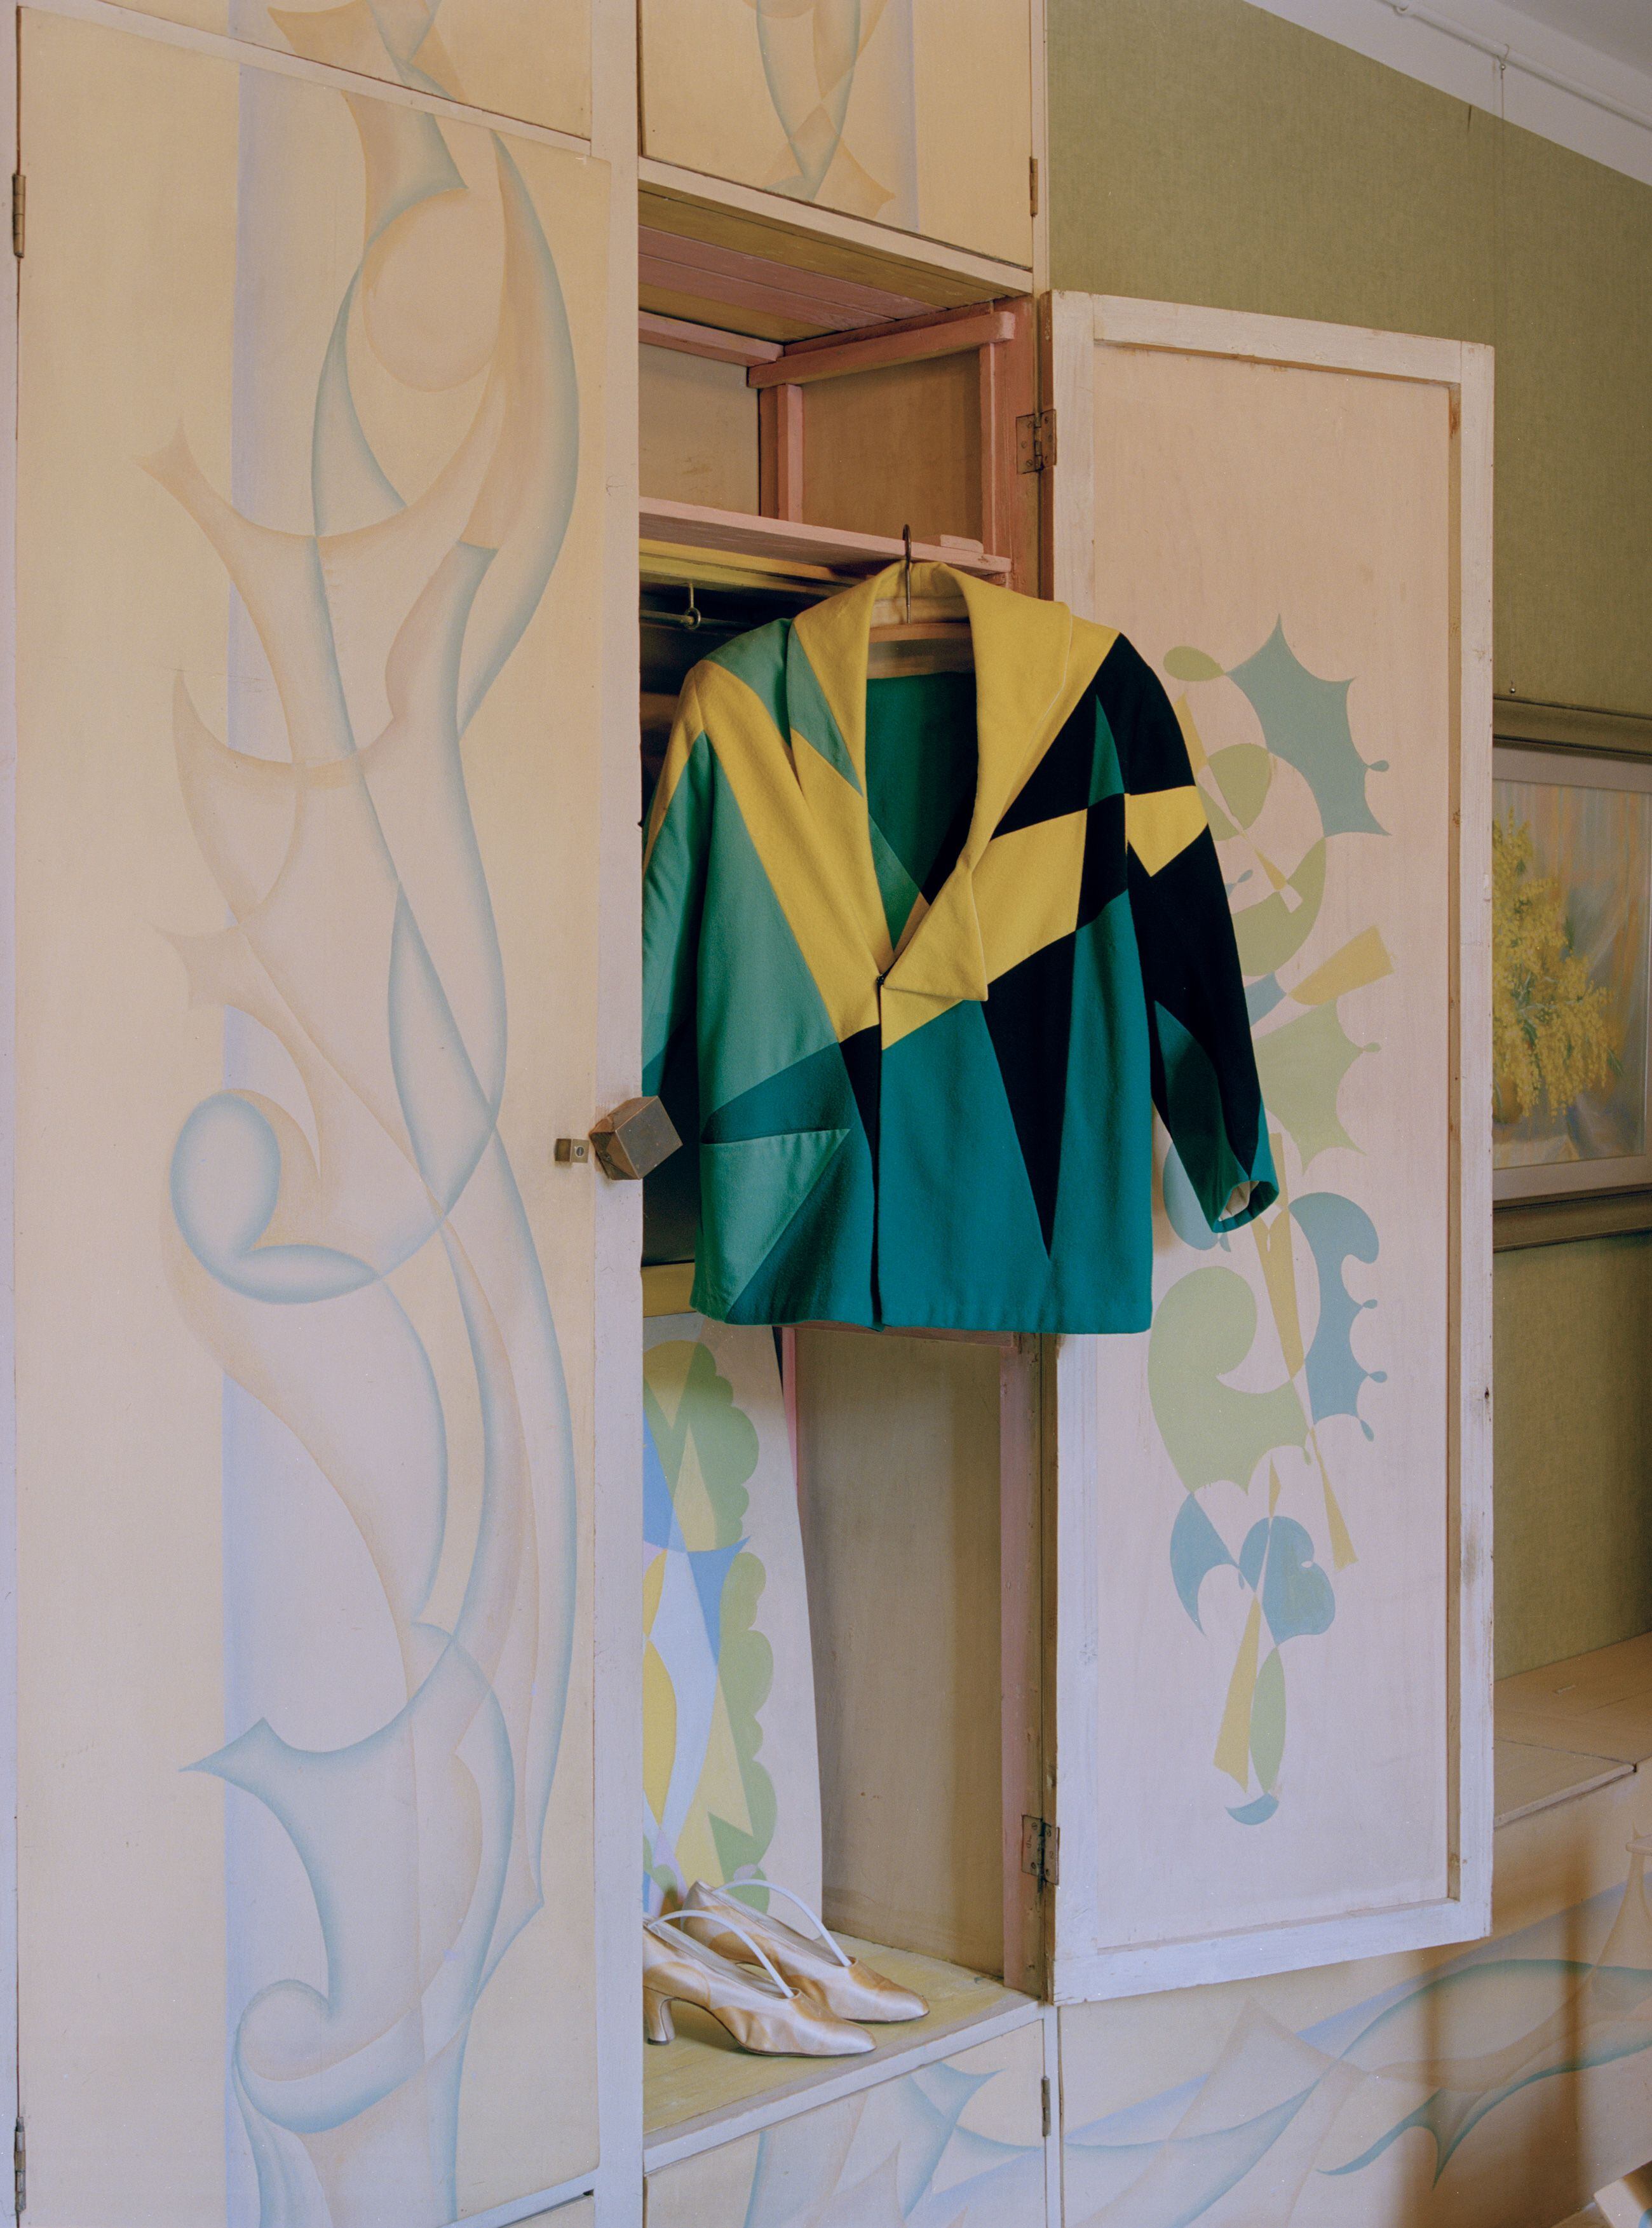 Una chaqueta de Balla: la moda futurista debía tener 'colores brillantes'.